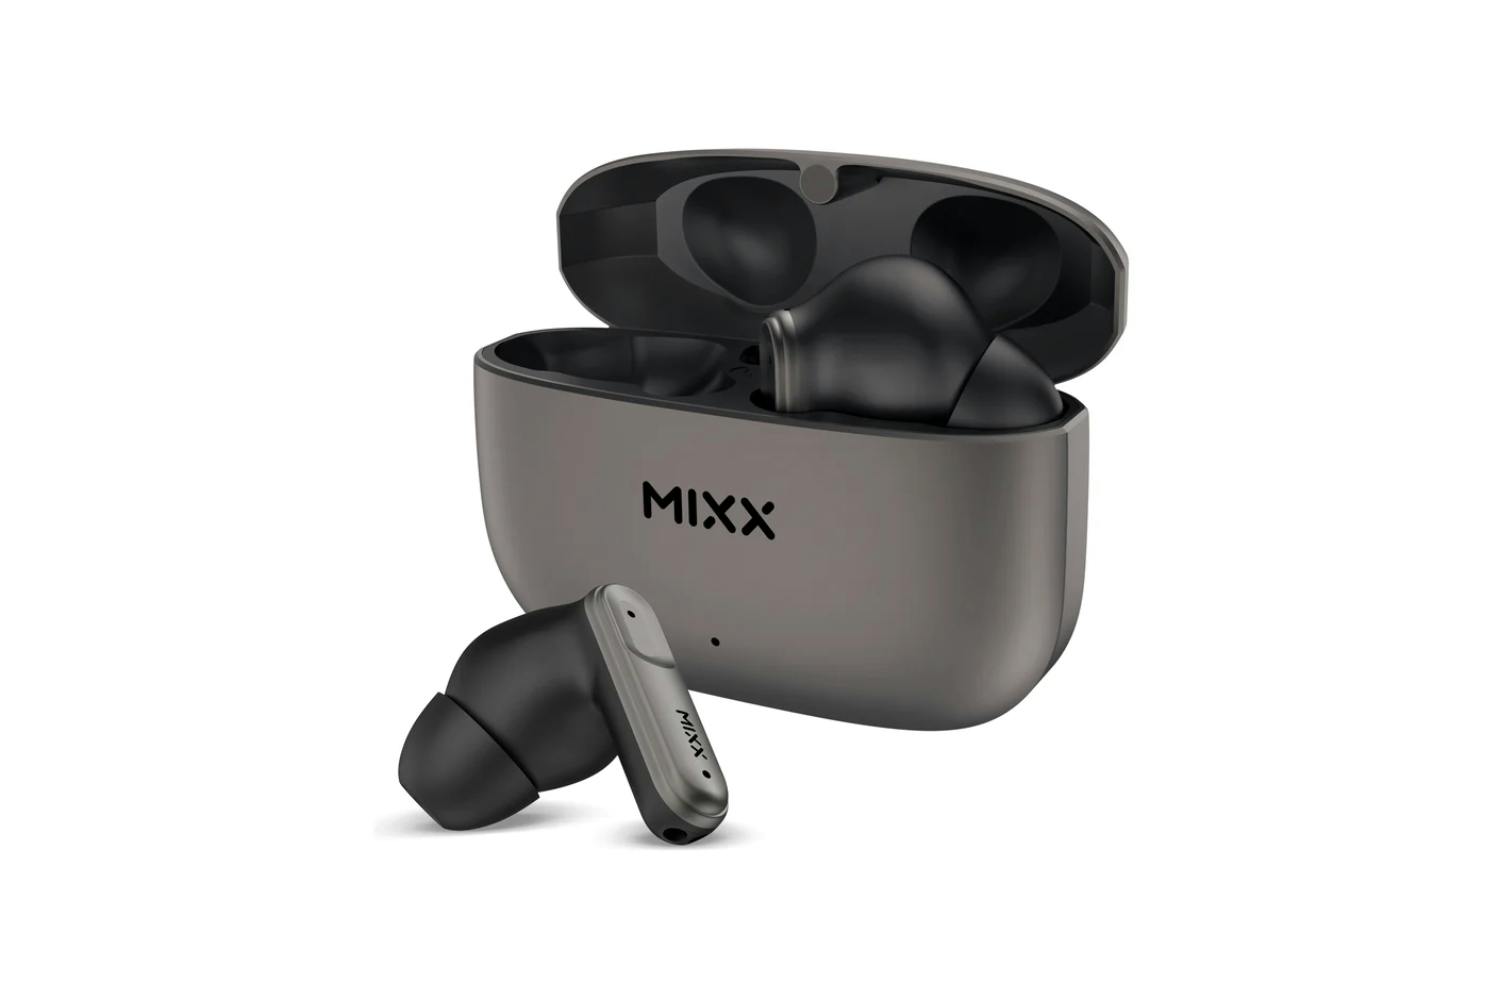 Mixx Streambuds Custom 3 True Wireless Earbuds | Black